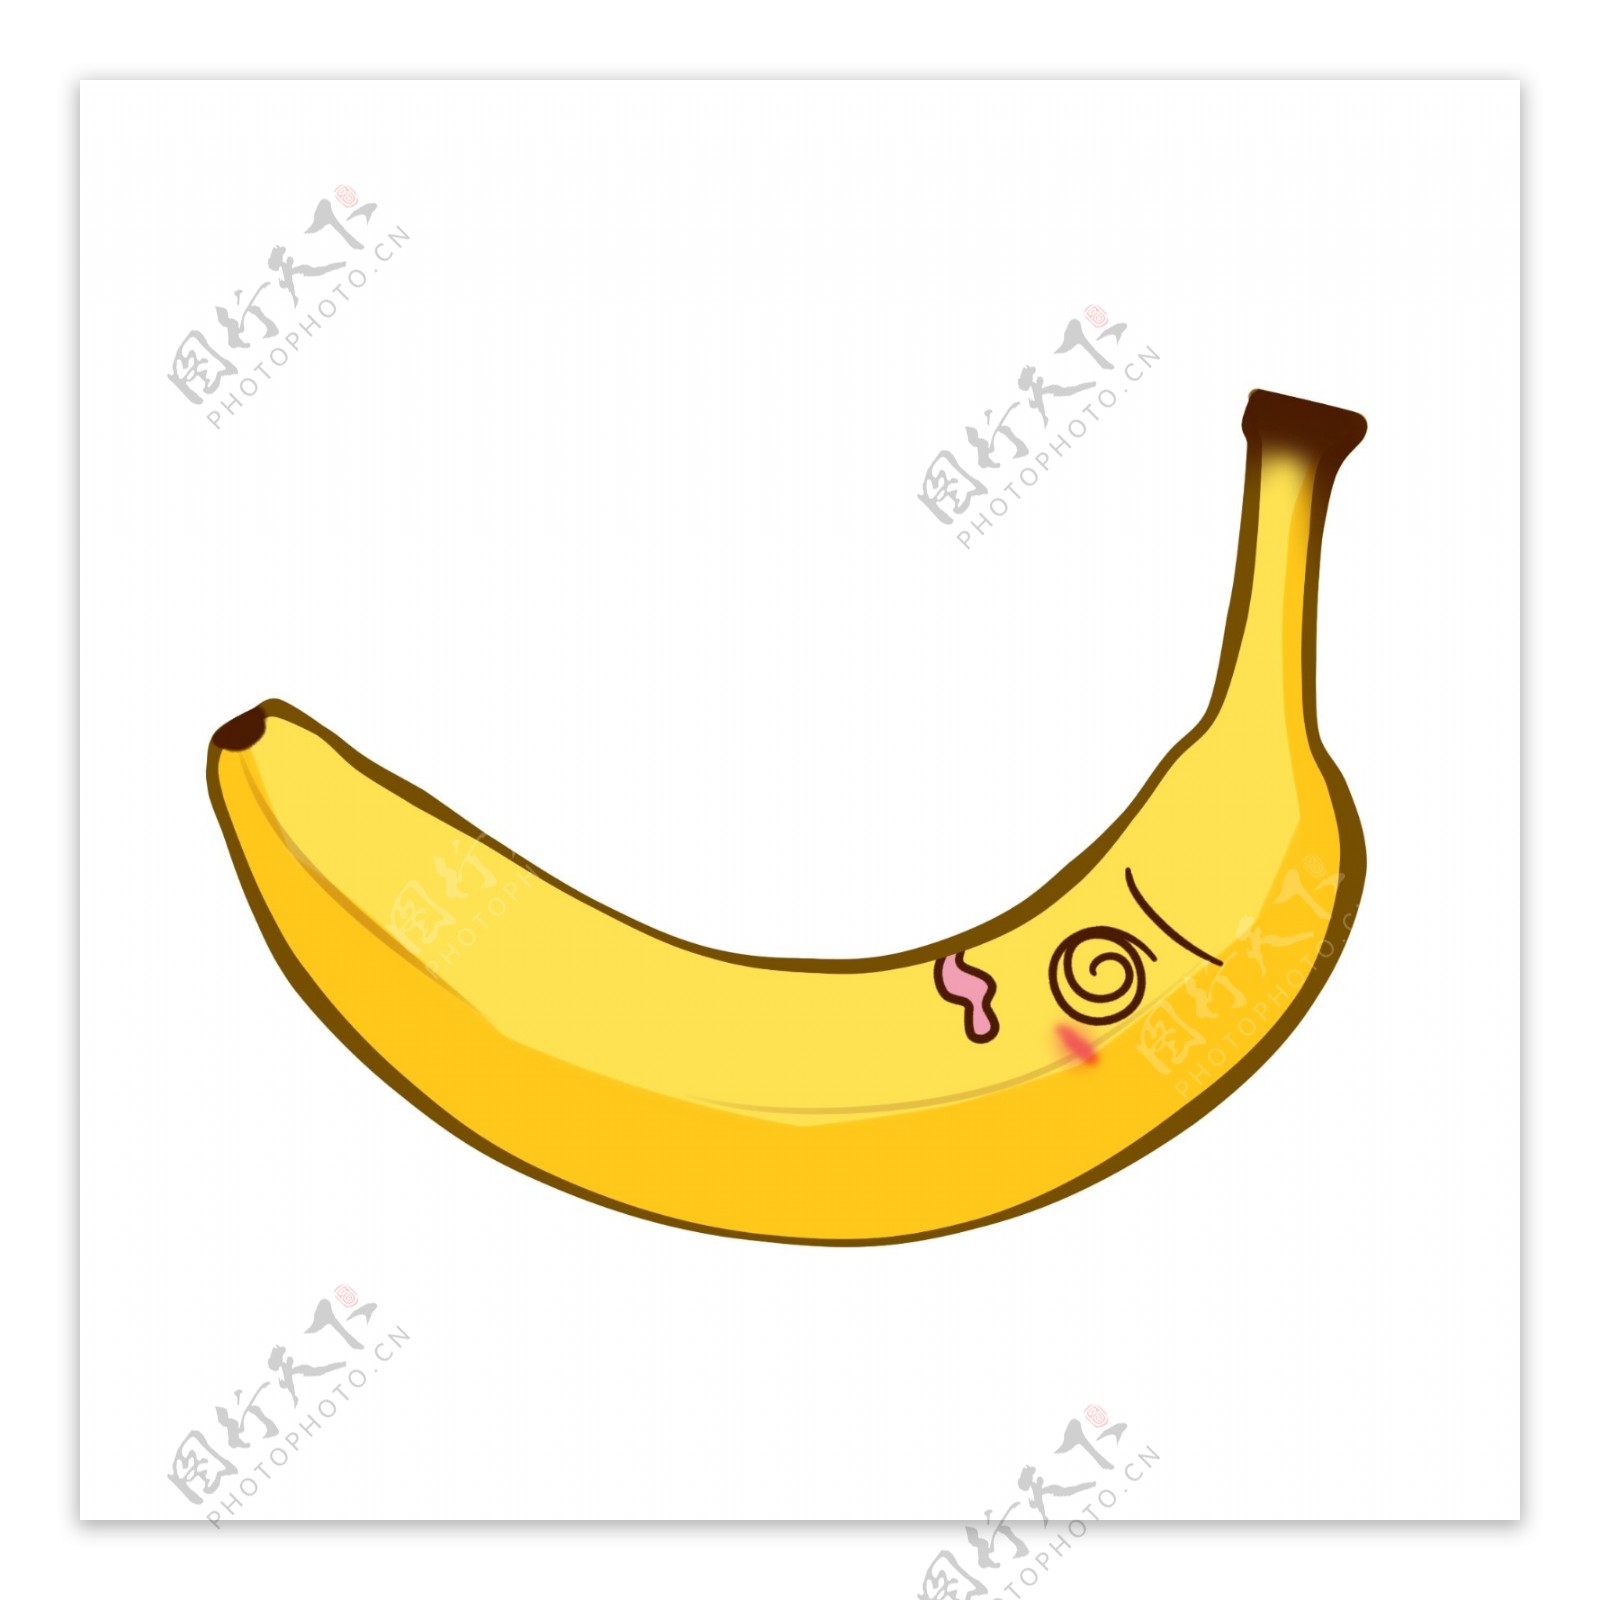 一只弯弯的大香蕉